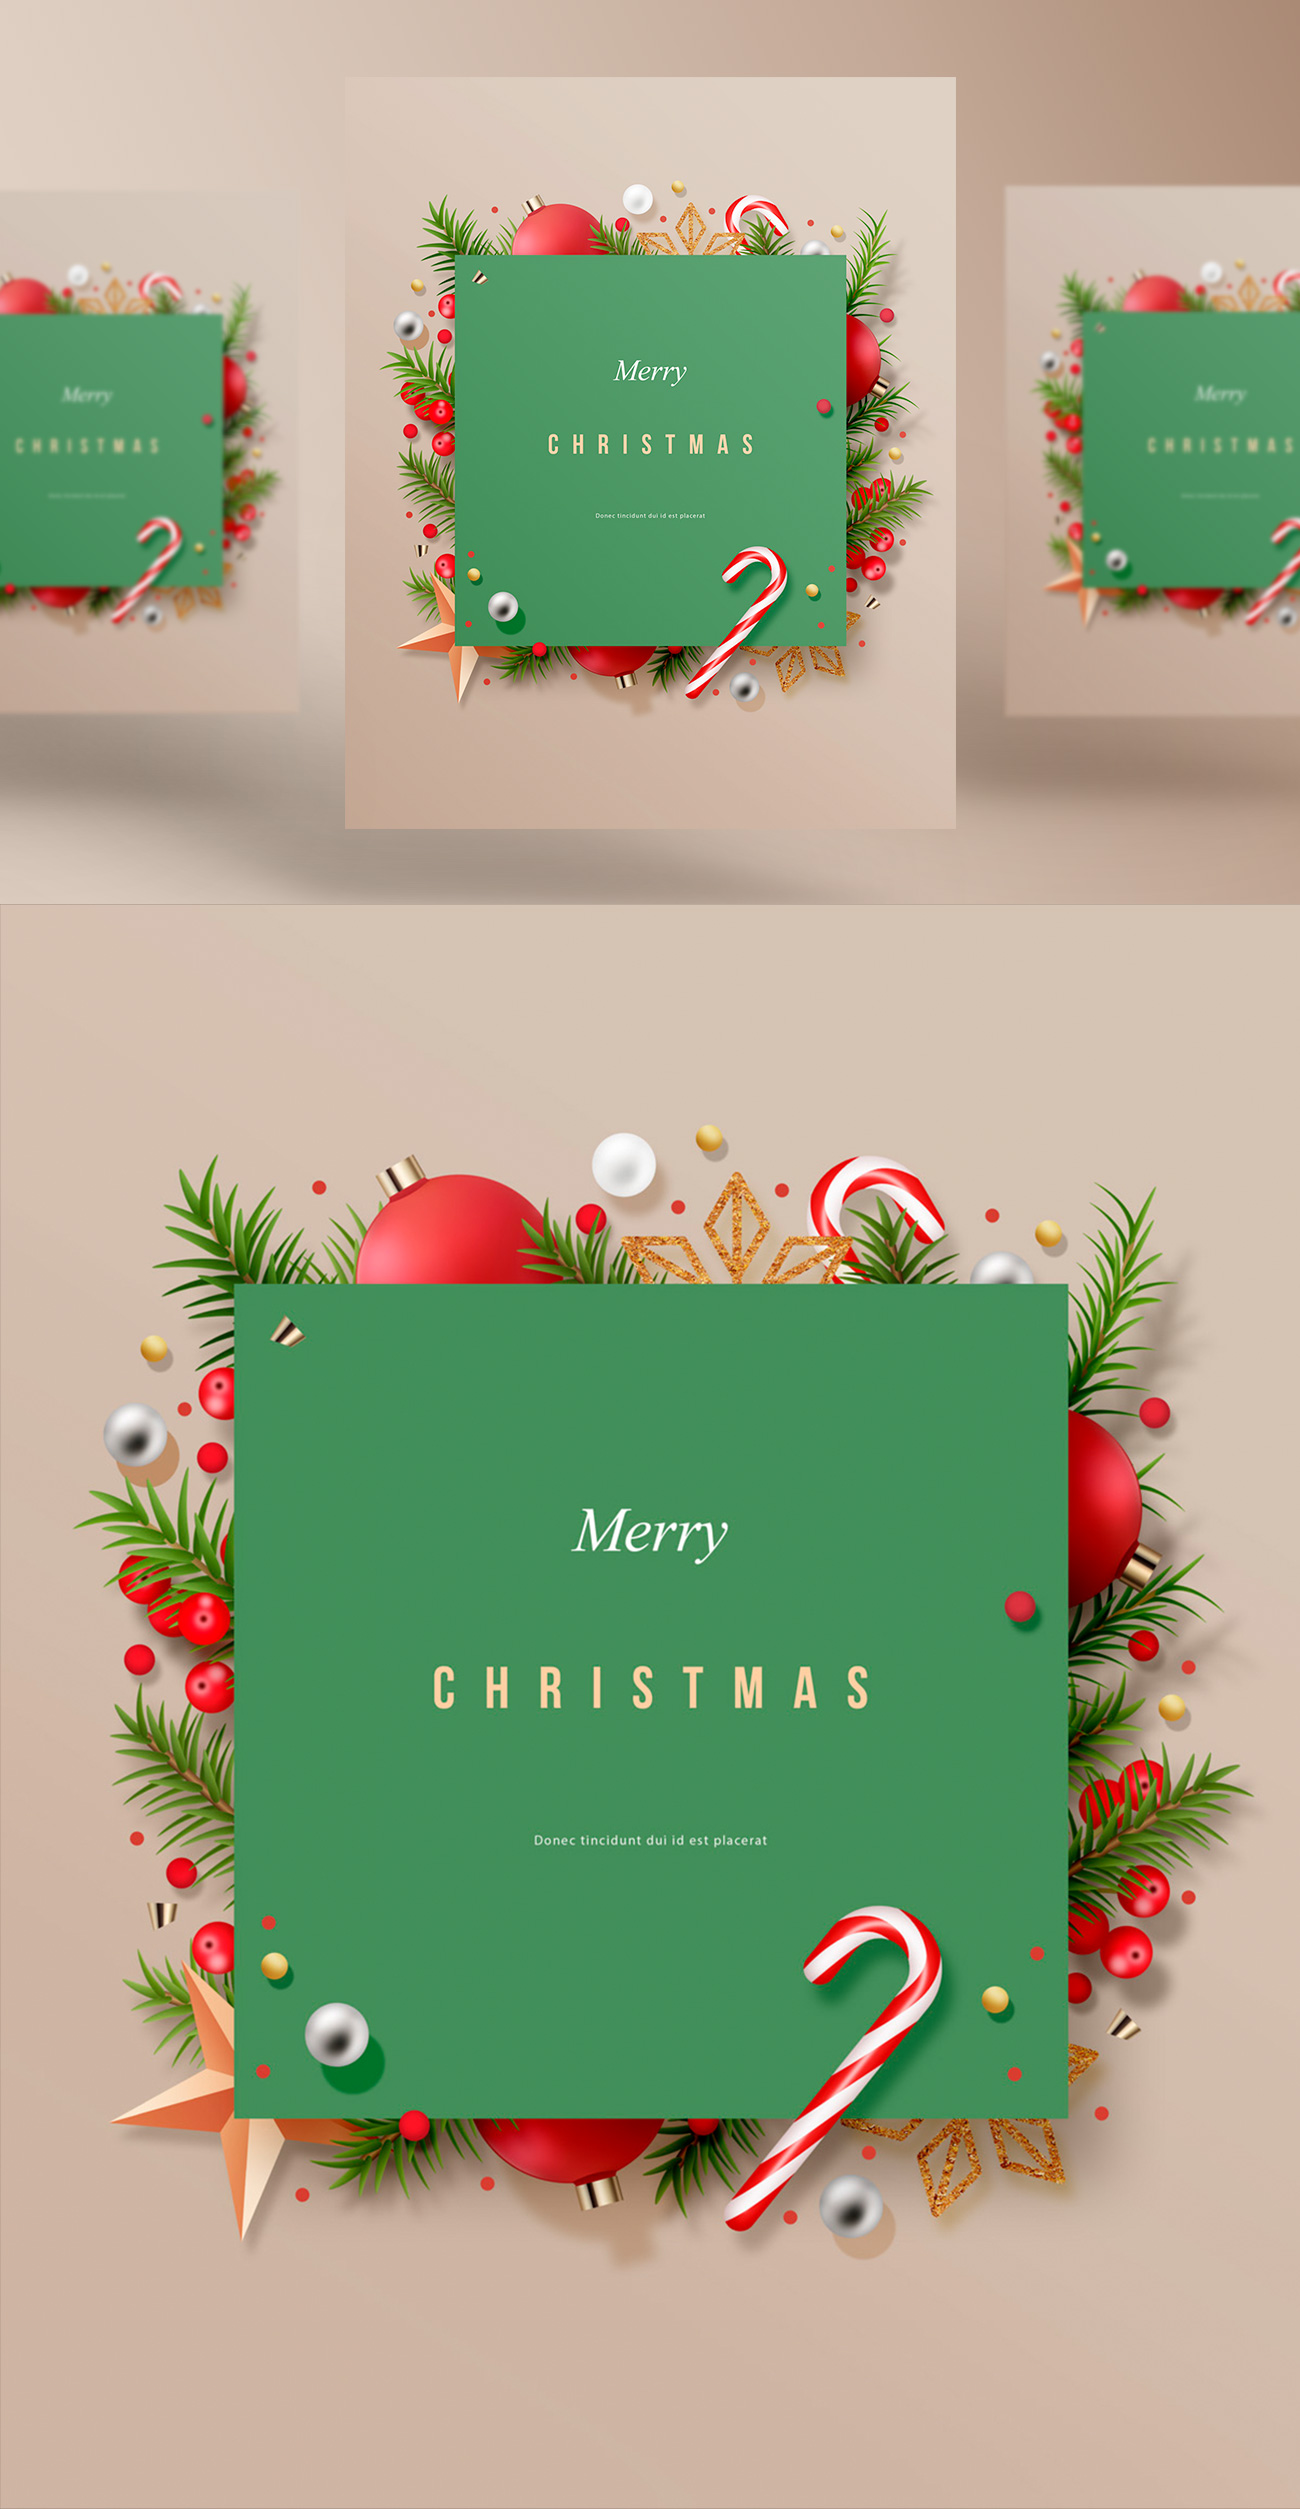 极简主义圣诞节概念促销宣传海报PSD模板